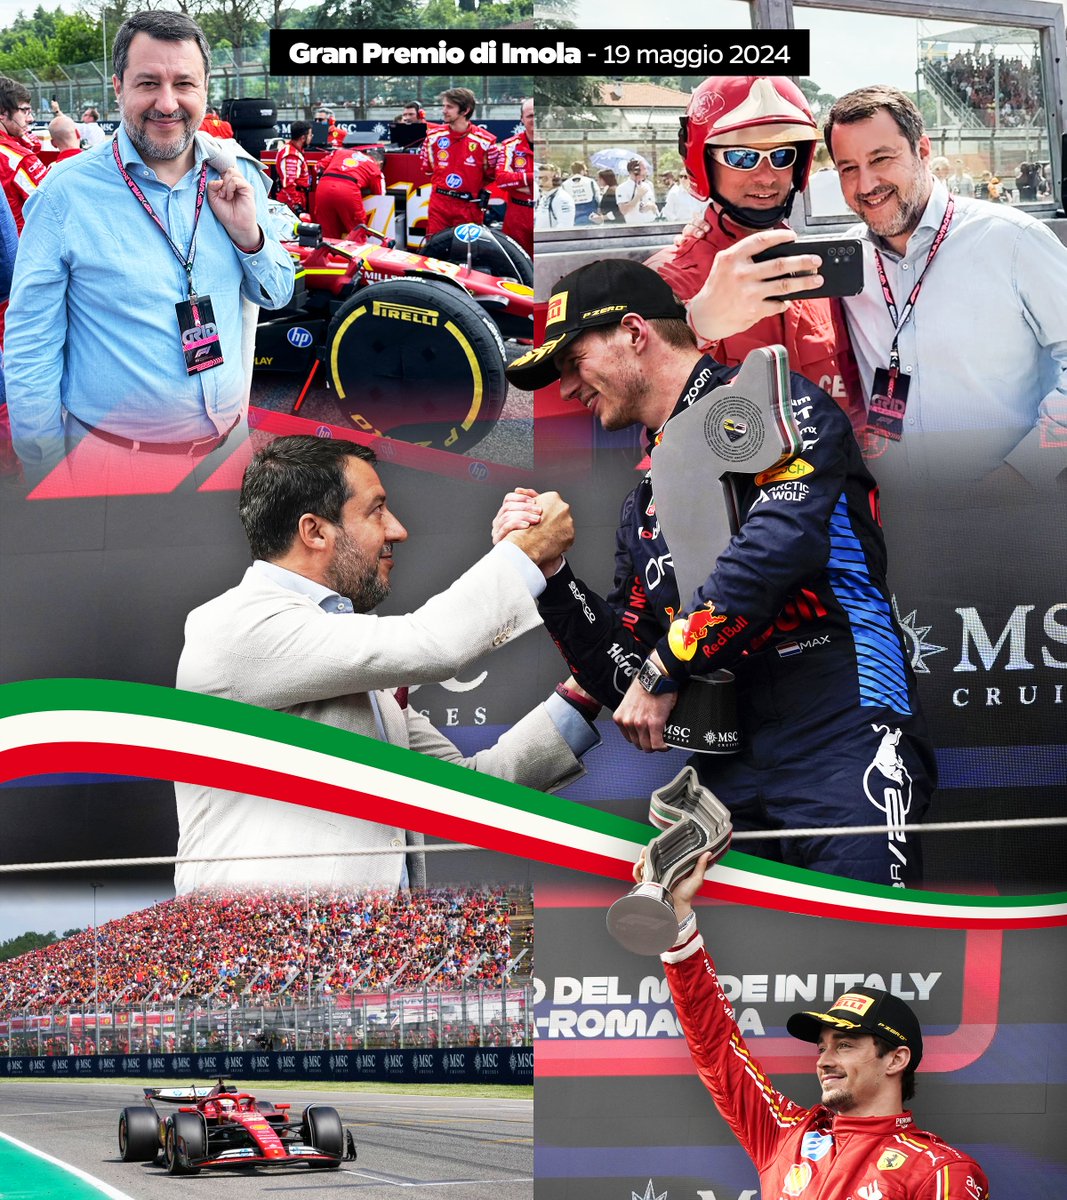 Una bella domenica di sport oggi al GP di Imola, con 200mila persone arrivate da tutto il mondo: il primo applauso va a loro 👏🏻 La Formula 1 è passione e adrenalina, ma anche uno straordinario 'motore' di sviluppo e lavoro per l'Italia: abbiamo due GP e ce li dobbiamo tenere